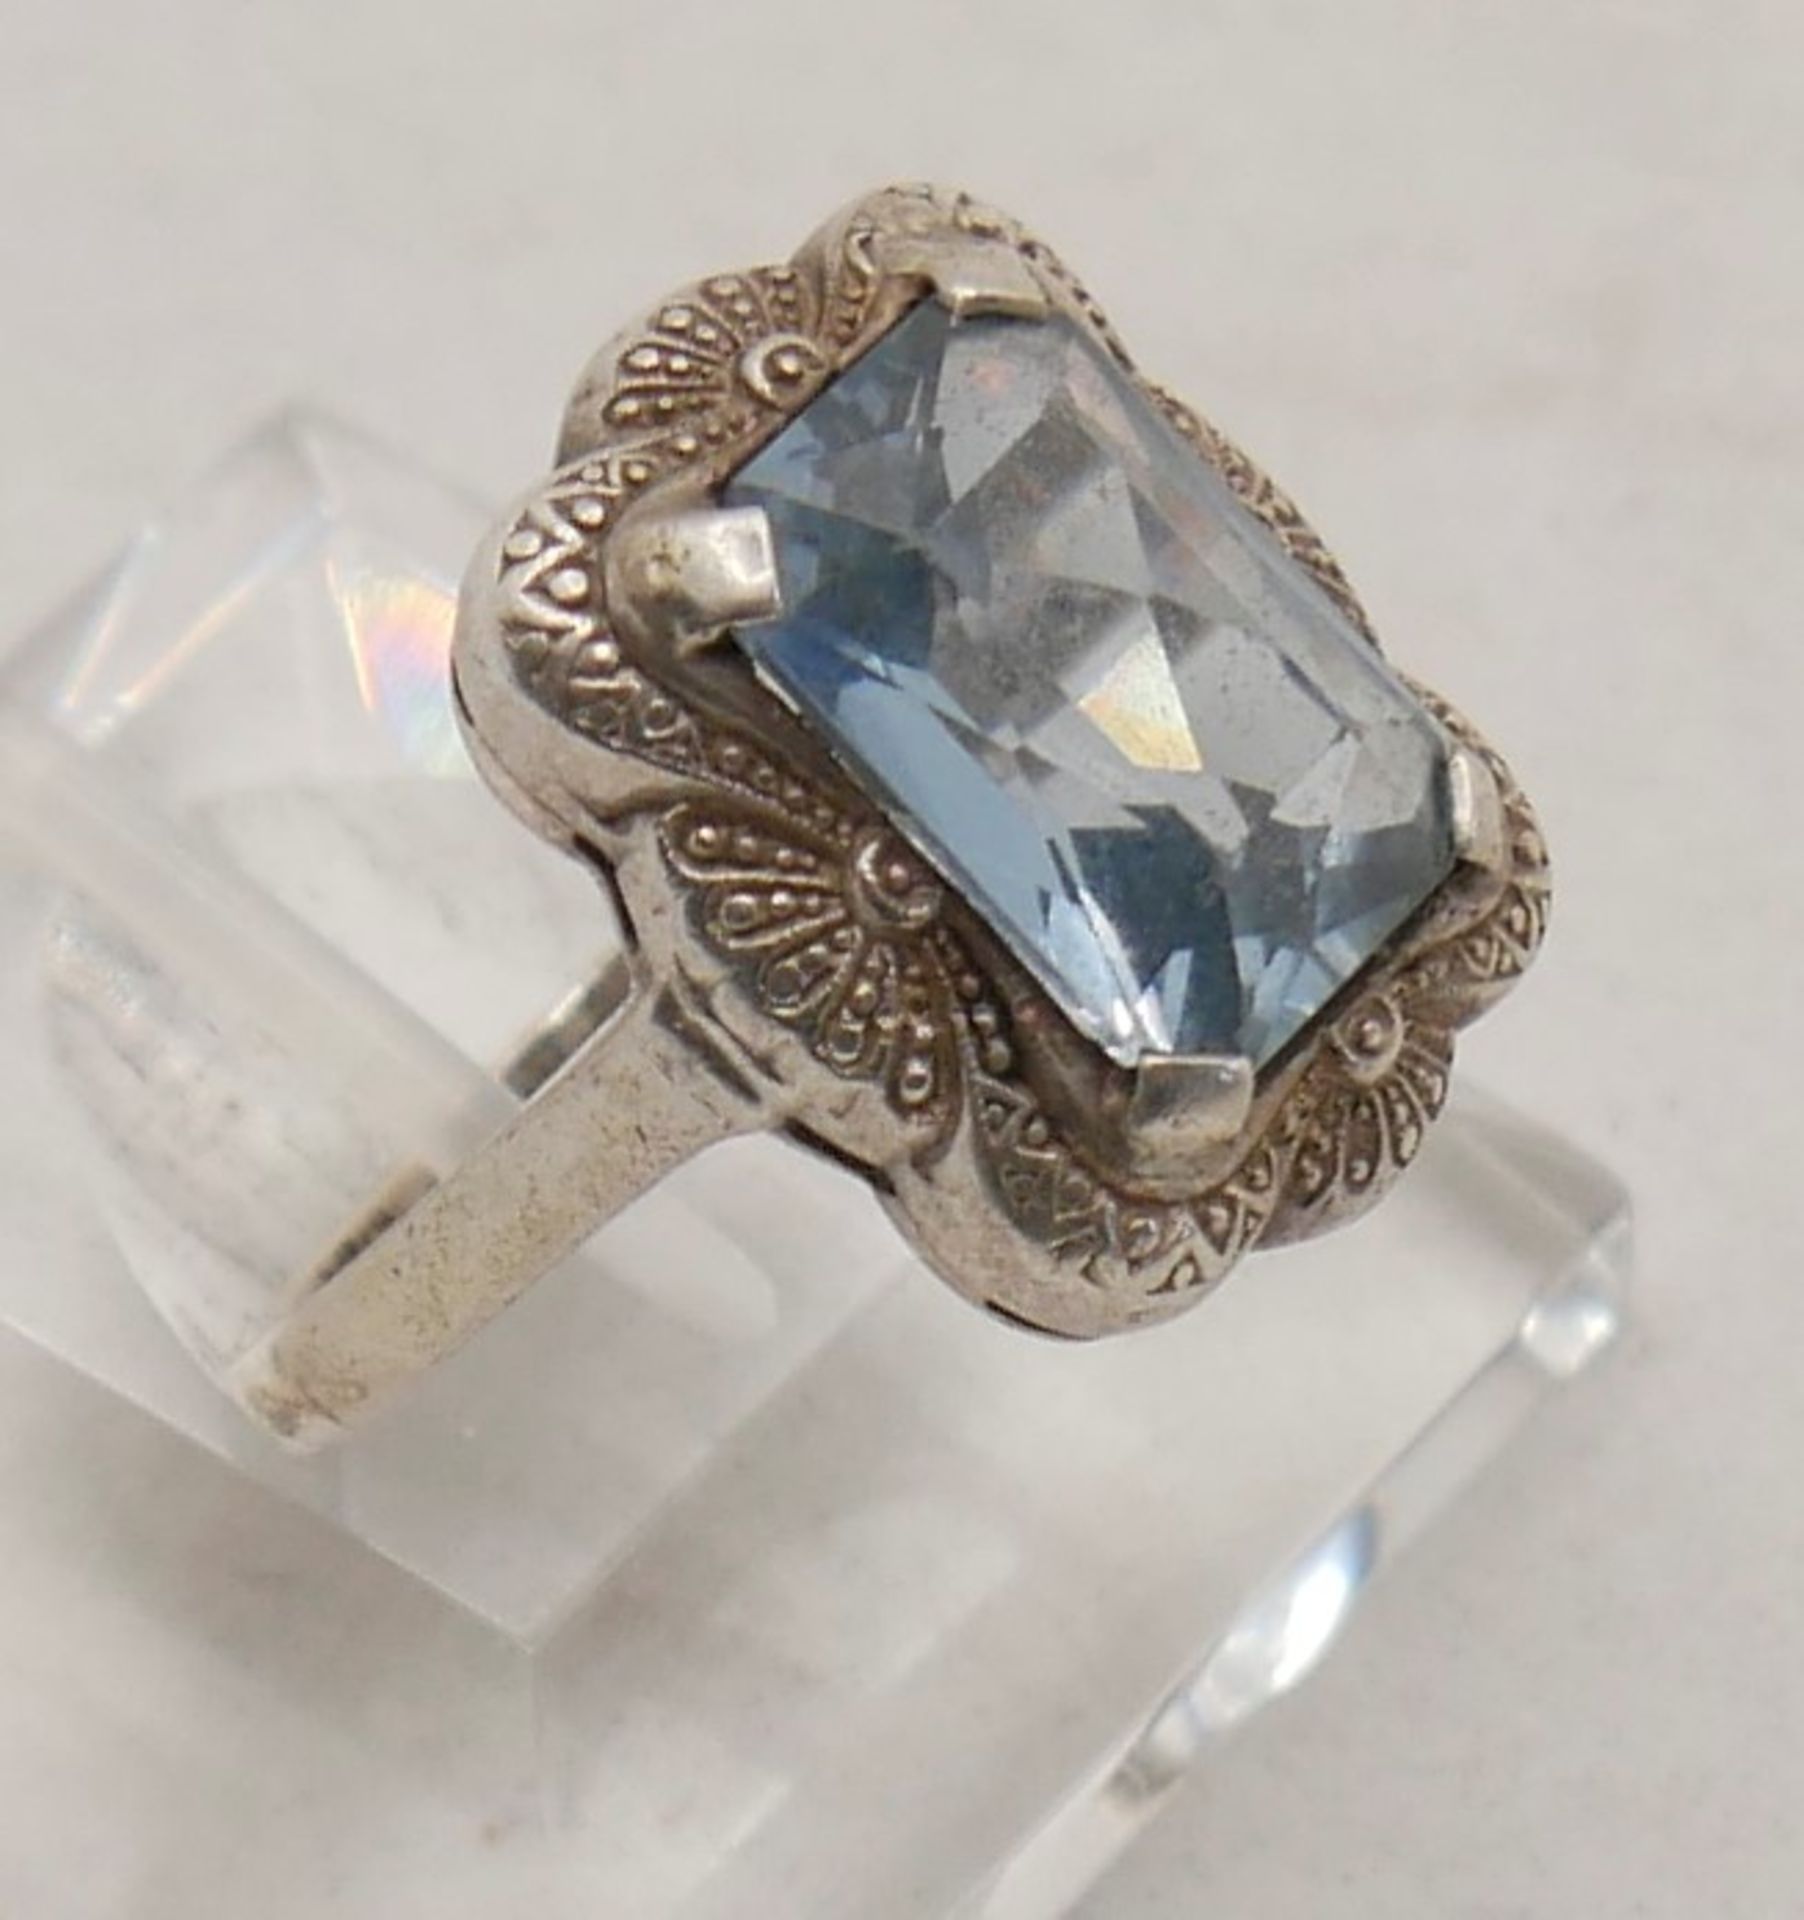 Damenring 835er Silber gepunzt mit hellblauem Glasstein, Ringgröße 56. - Image 2 of 2